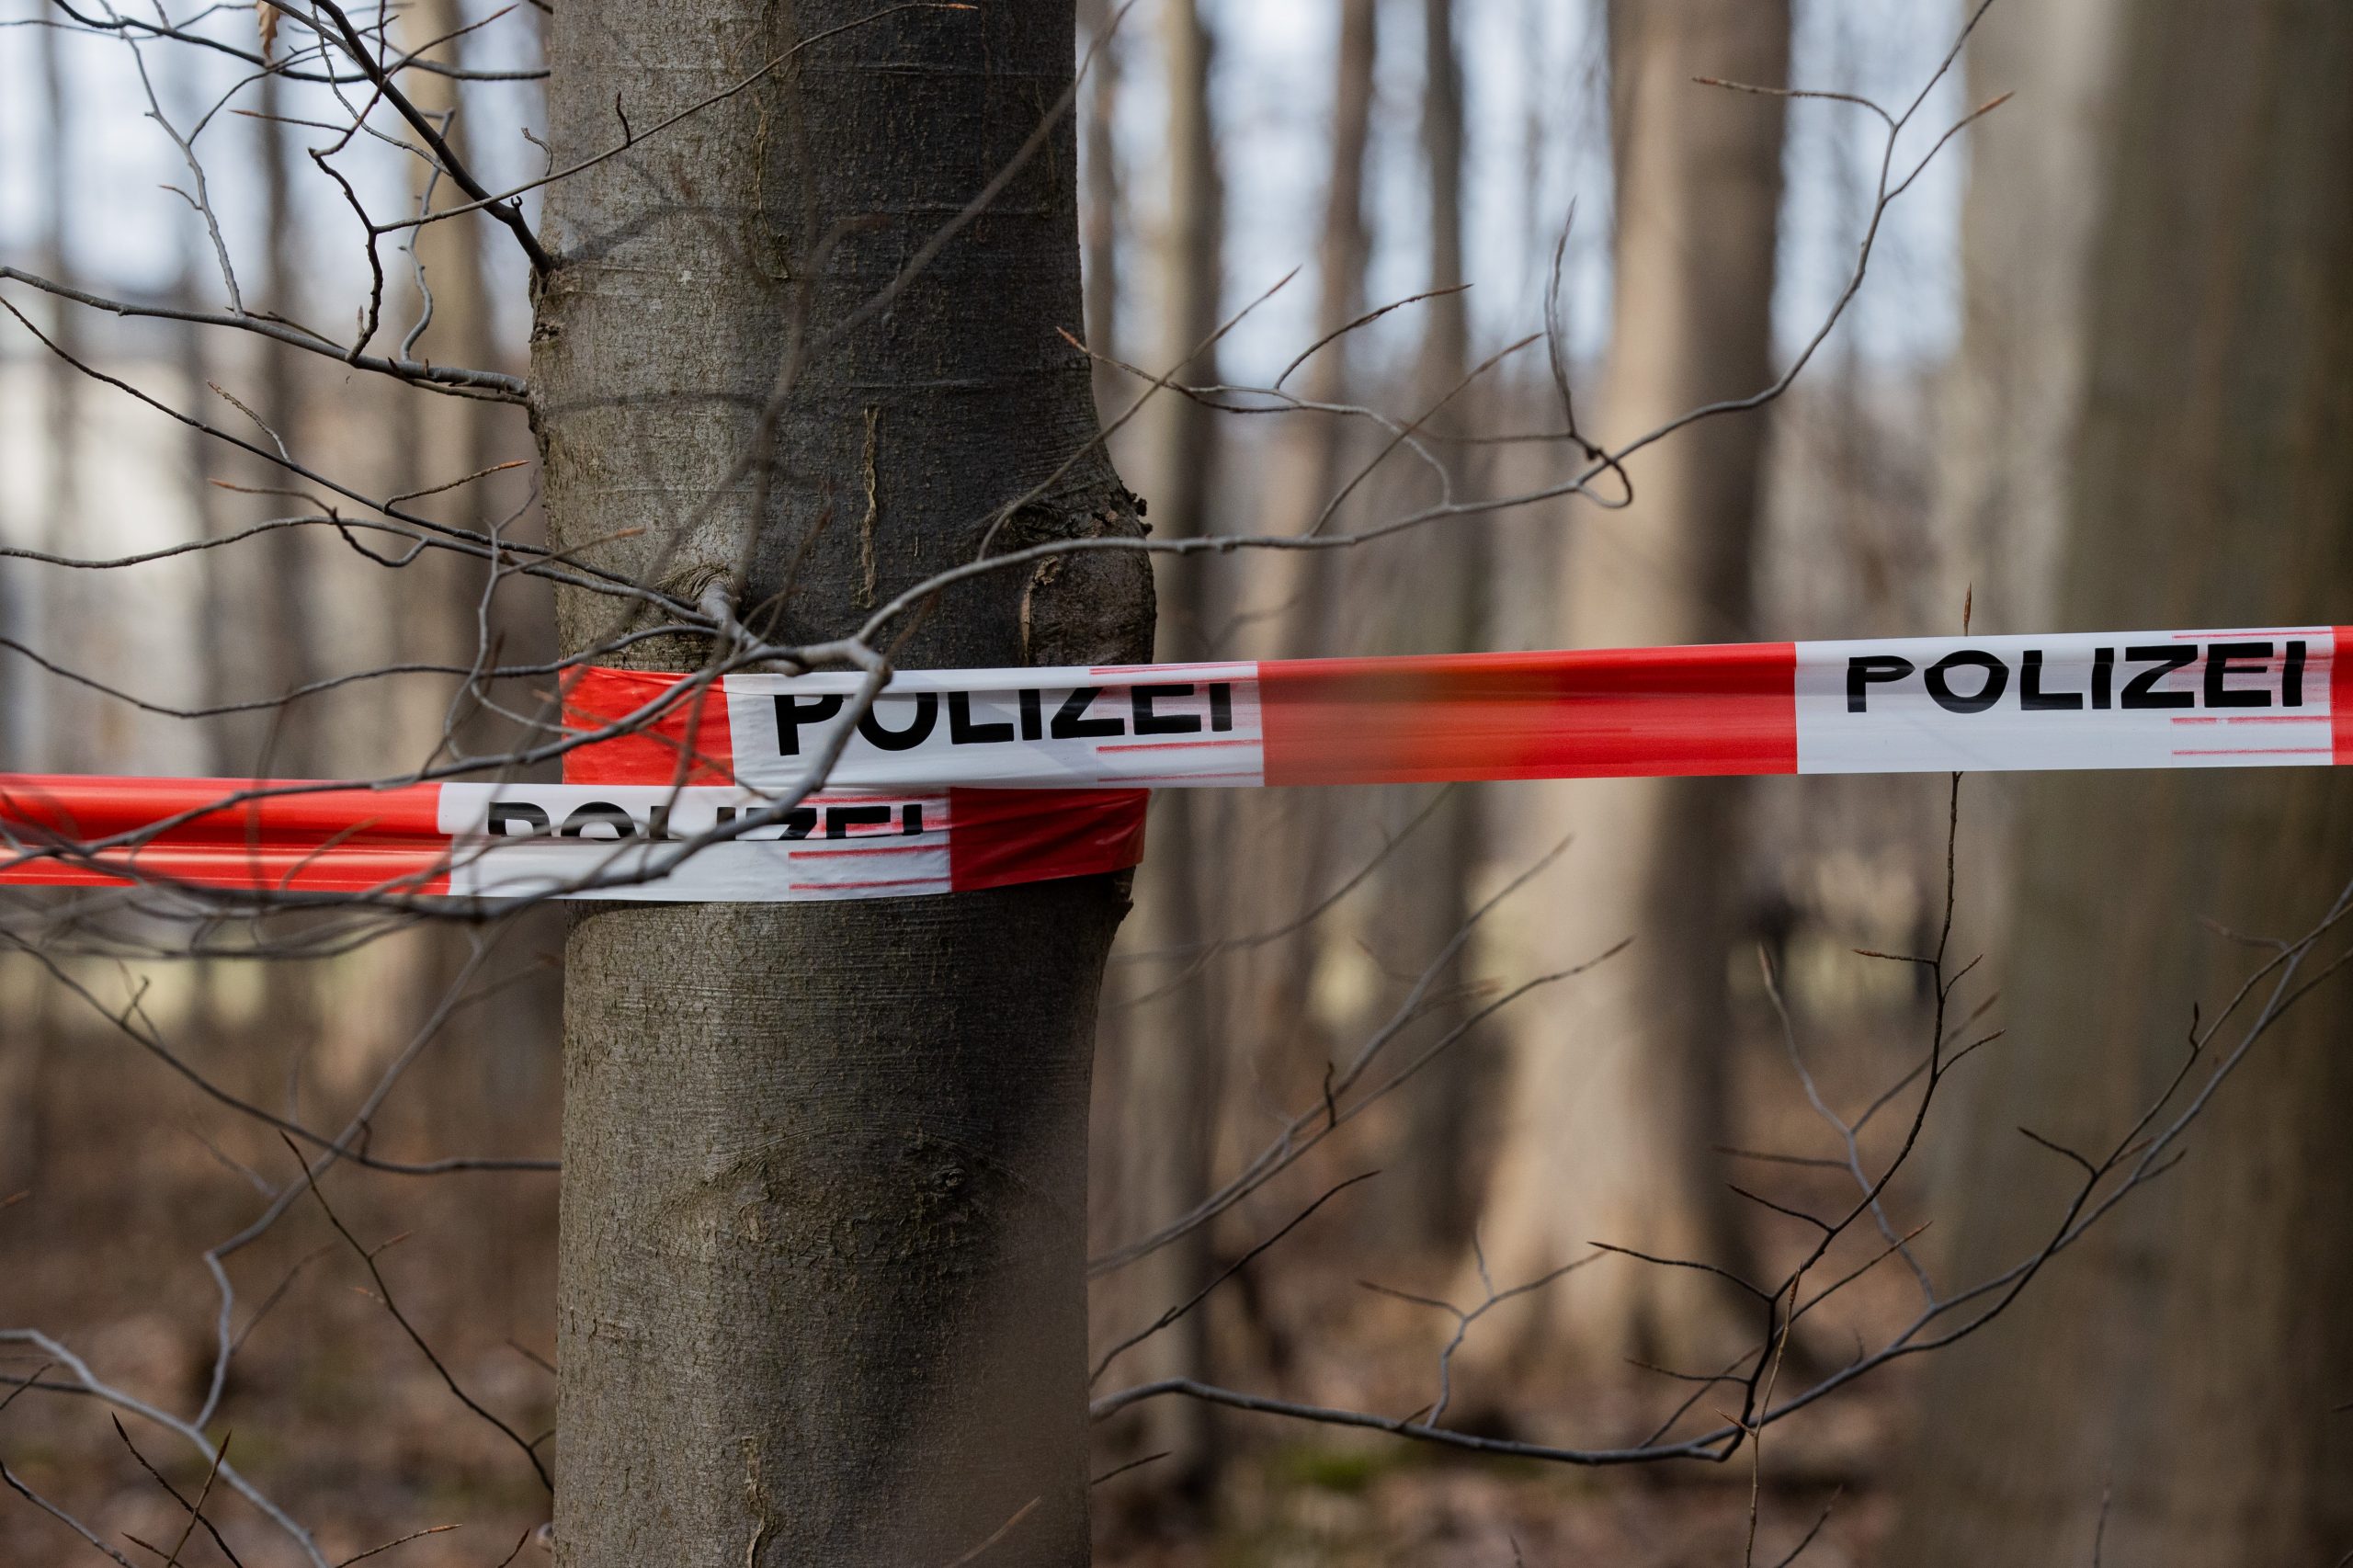 Polizeiabsperrung im Wald